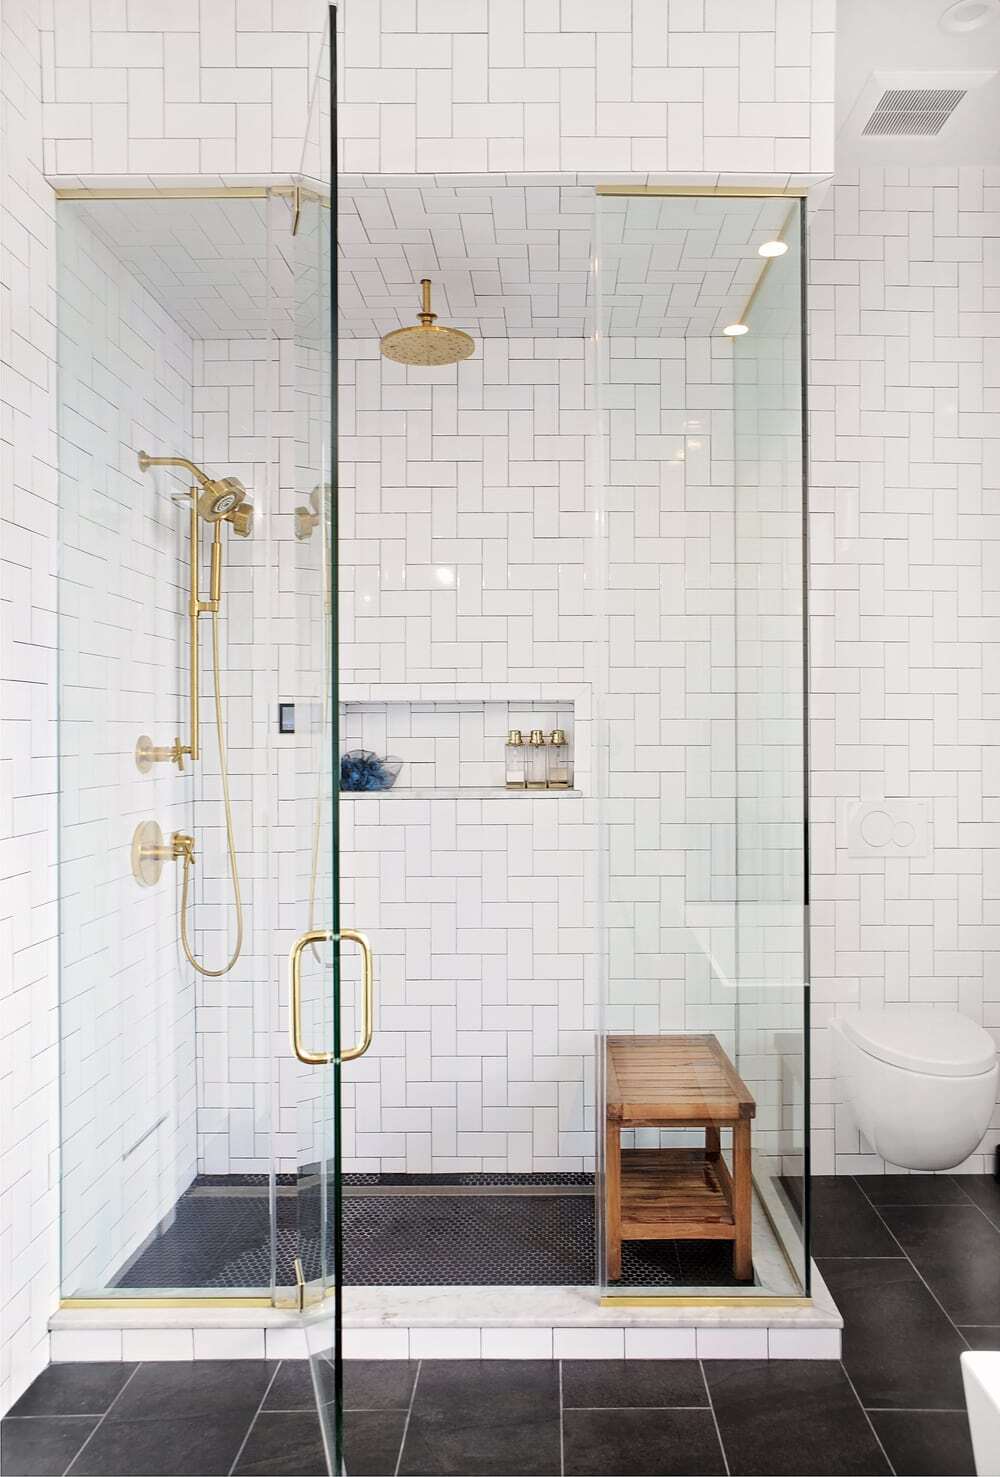 Kohler brushed gold shower set and steam shower.